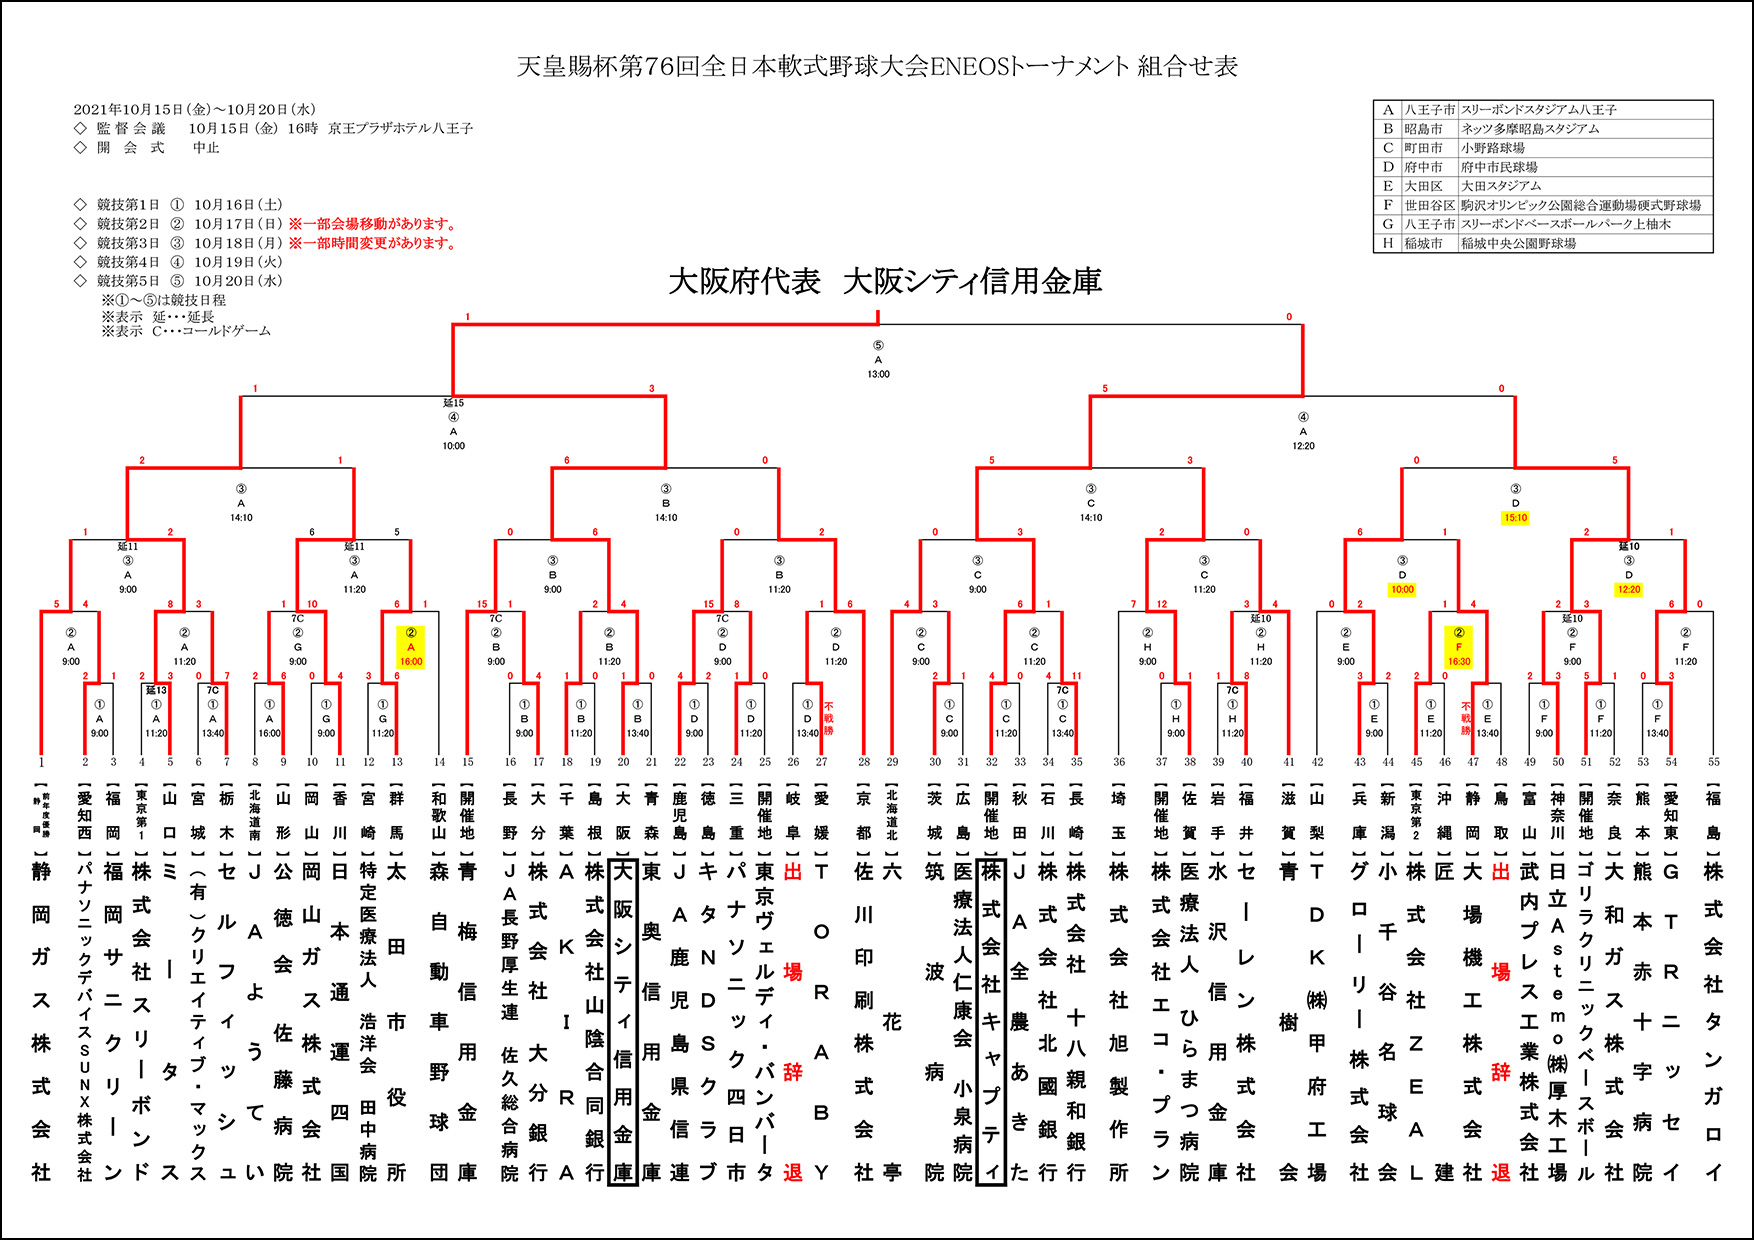 【結果】天皇賜杯第76回全日本軟式野球大会ENEOSトーナメント